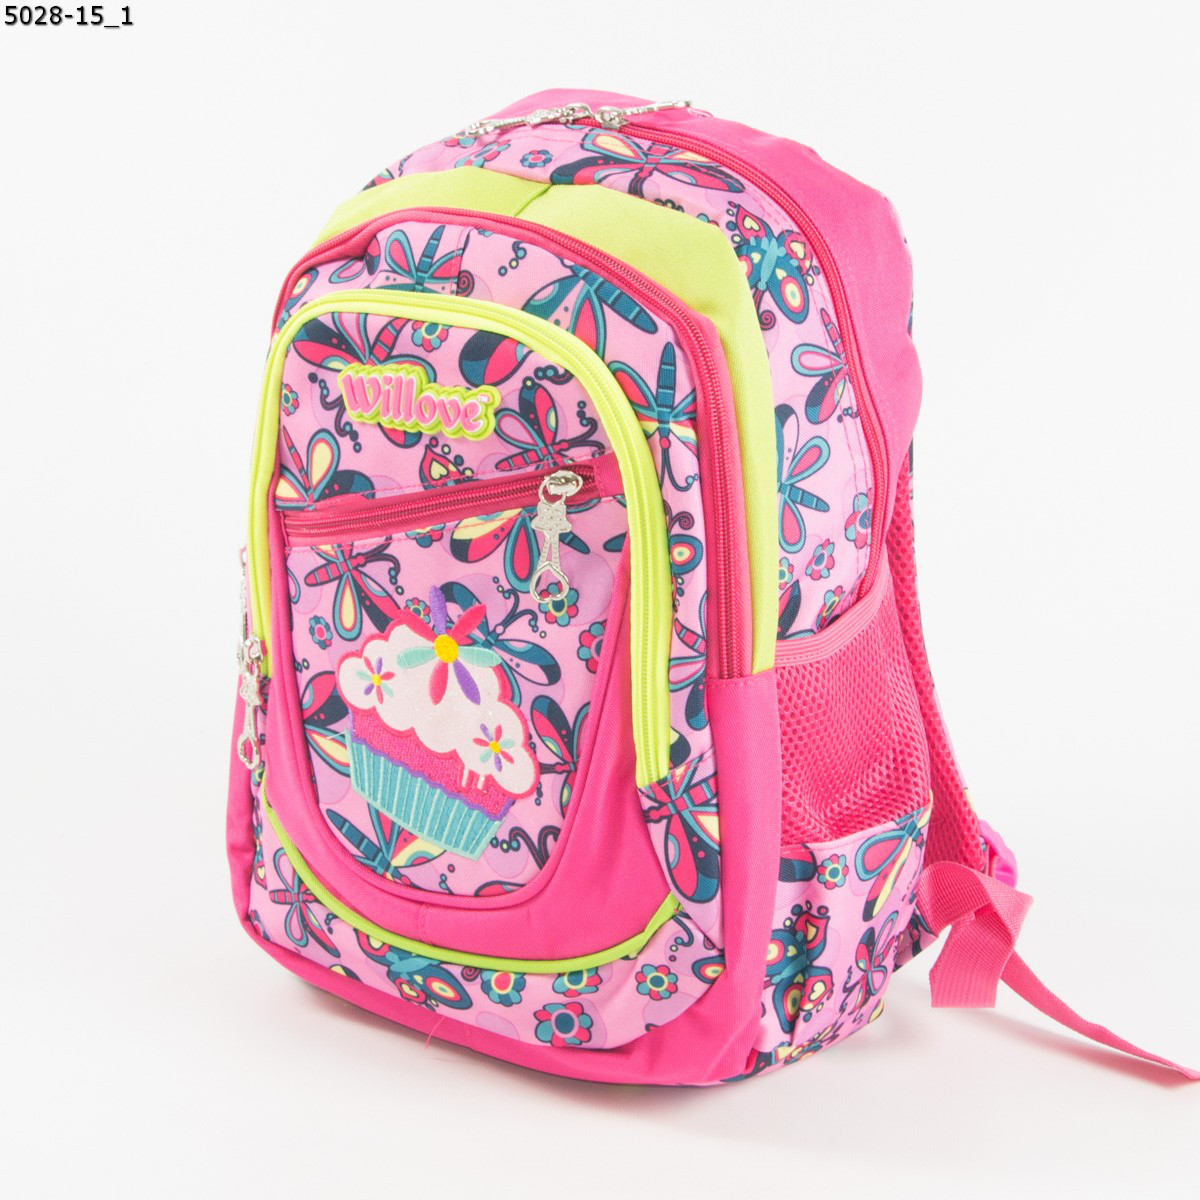 Шкільний/прогулянковий рюкзак для дівчаток з метеликами - рожевий - 5028-15